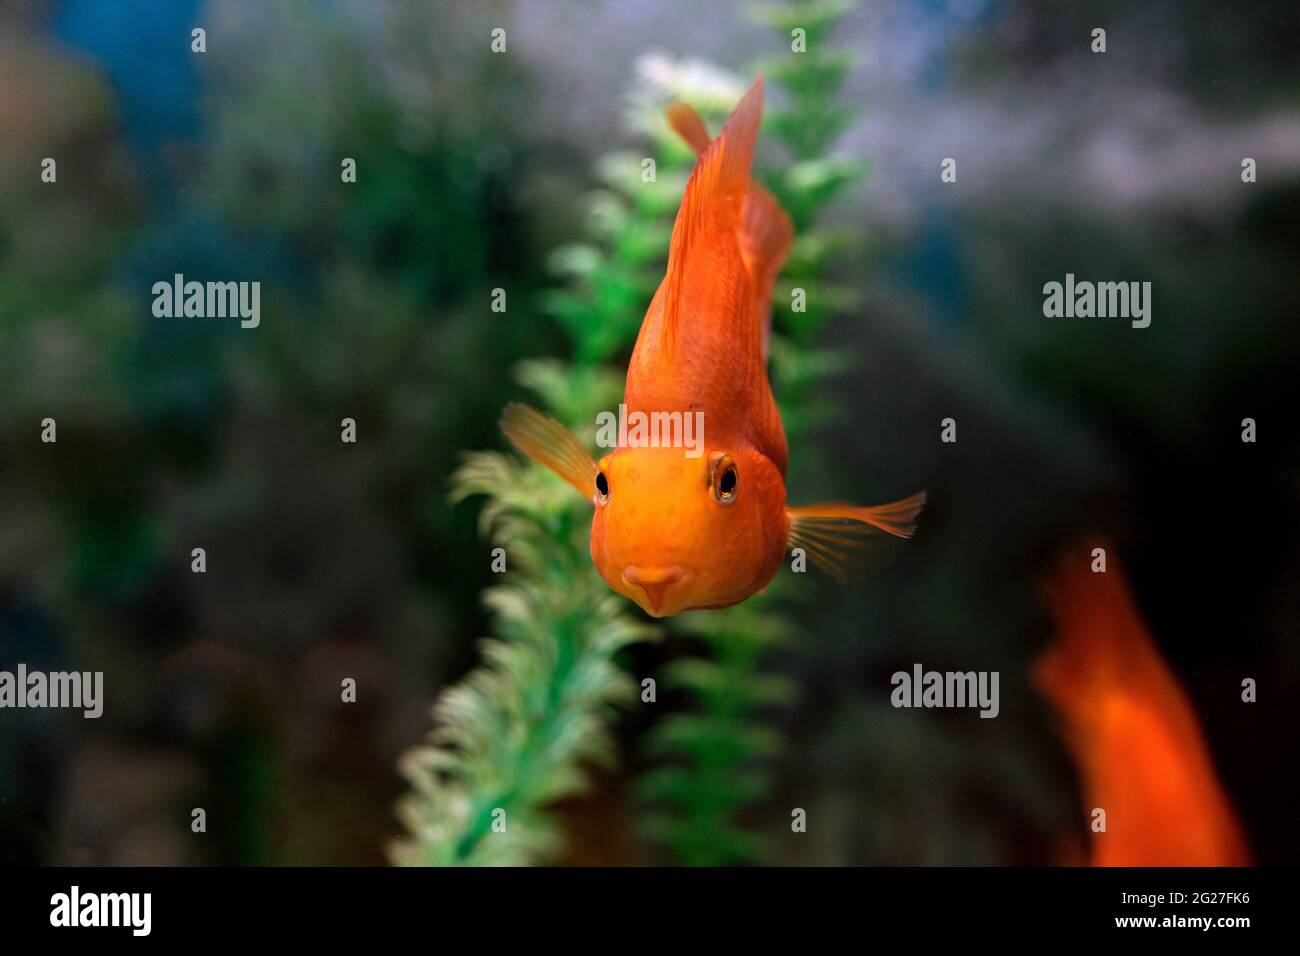 Nahaufnahme eines orangeroten Papageiendeckels auf einem grünen Hintergrund. Aquariumfische schwimmen, um sich zu treffen oder das Meeresleben zu füttern. Fotos während des Tauchens. Meer oder Wasser Stockfoto